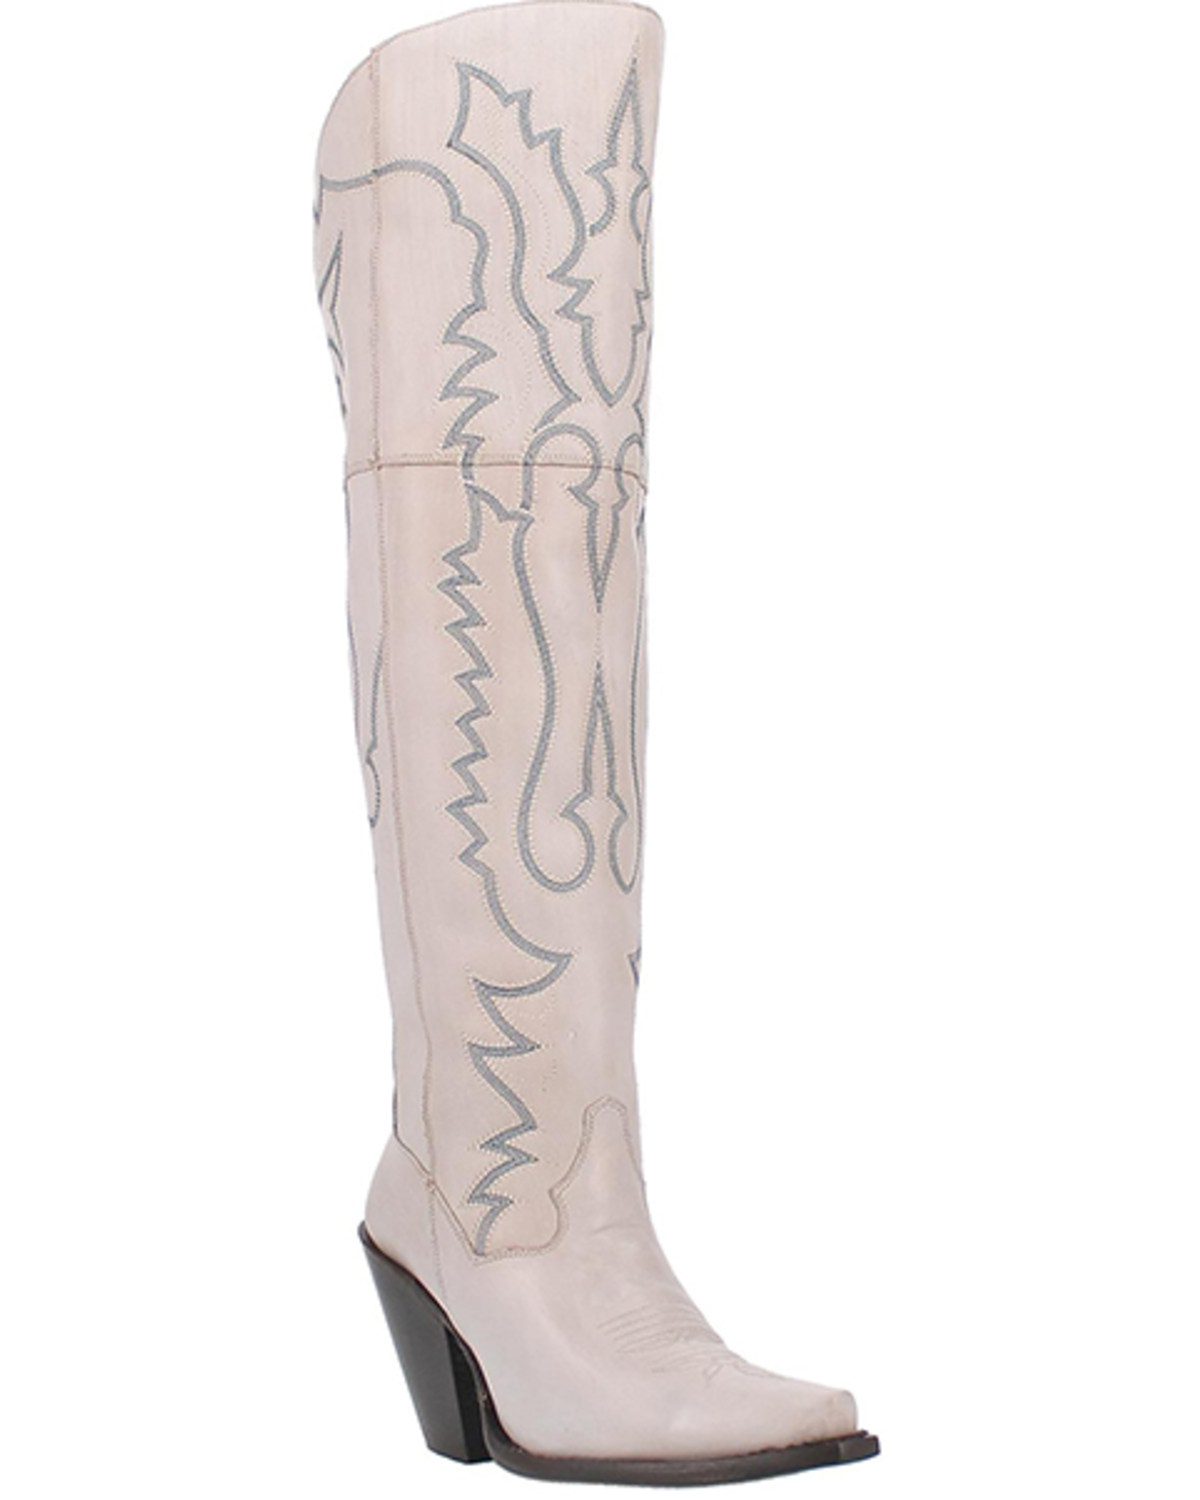 Dan Post Women's Loverfly Tall Western Boots - Snip Toe